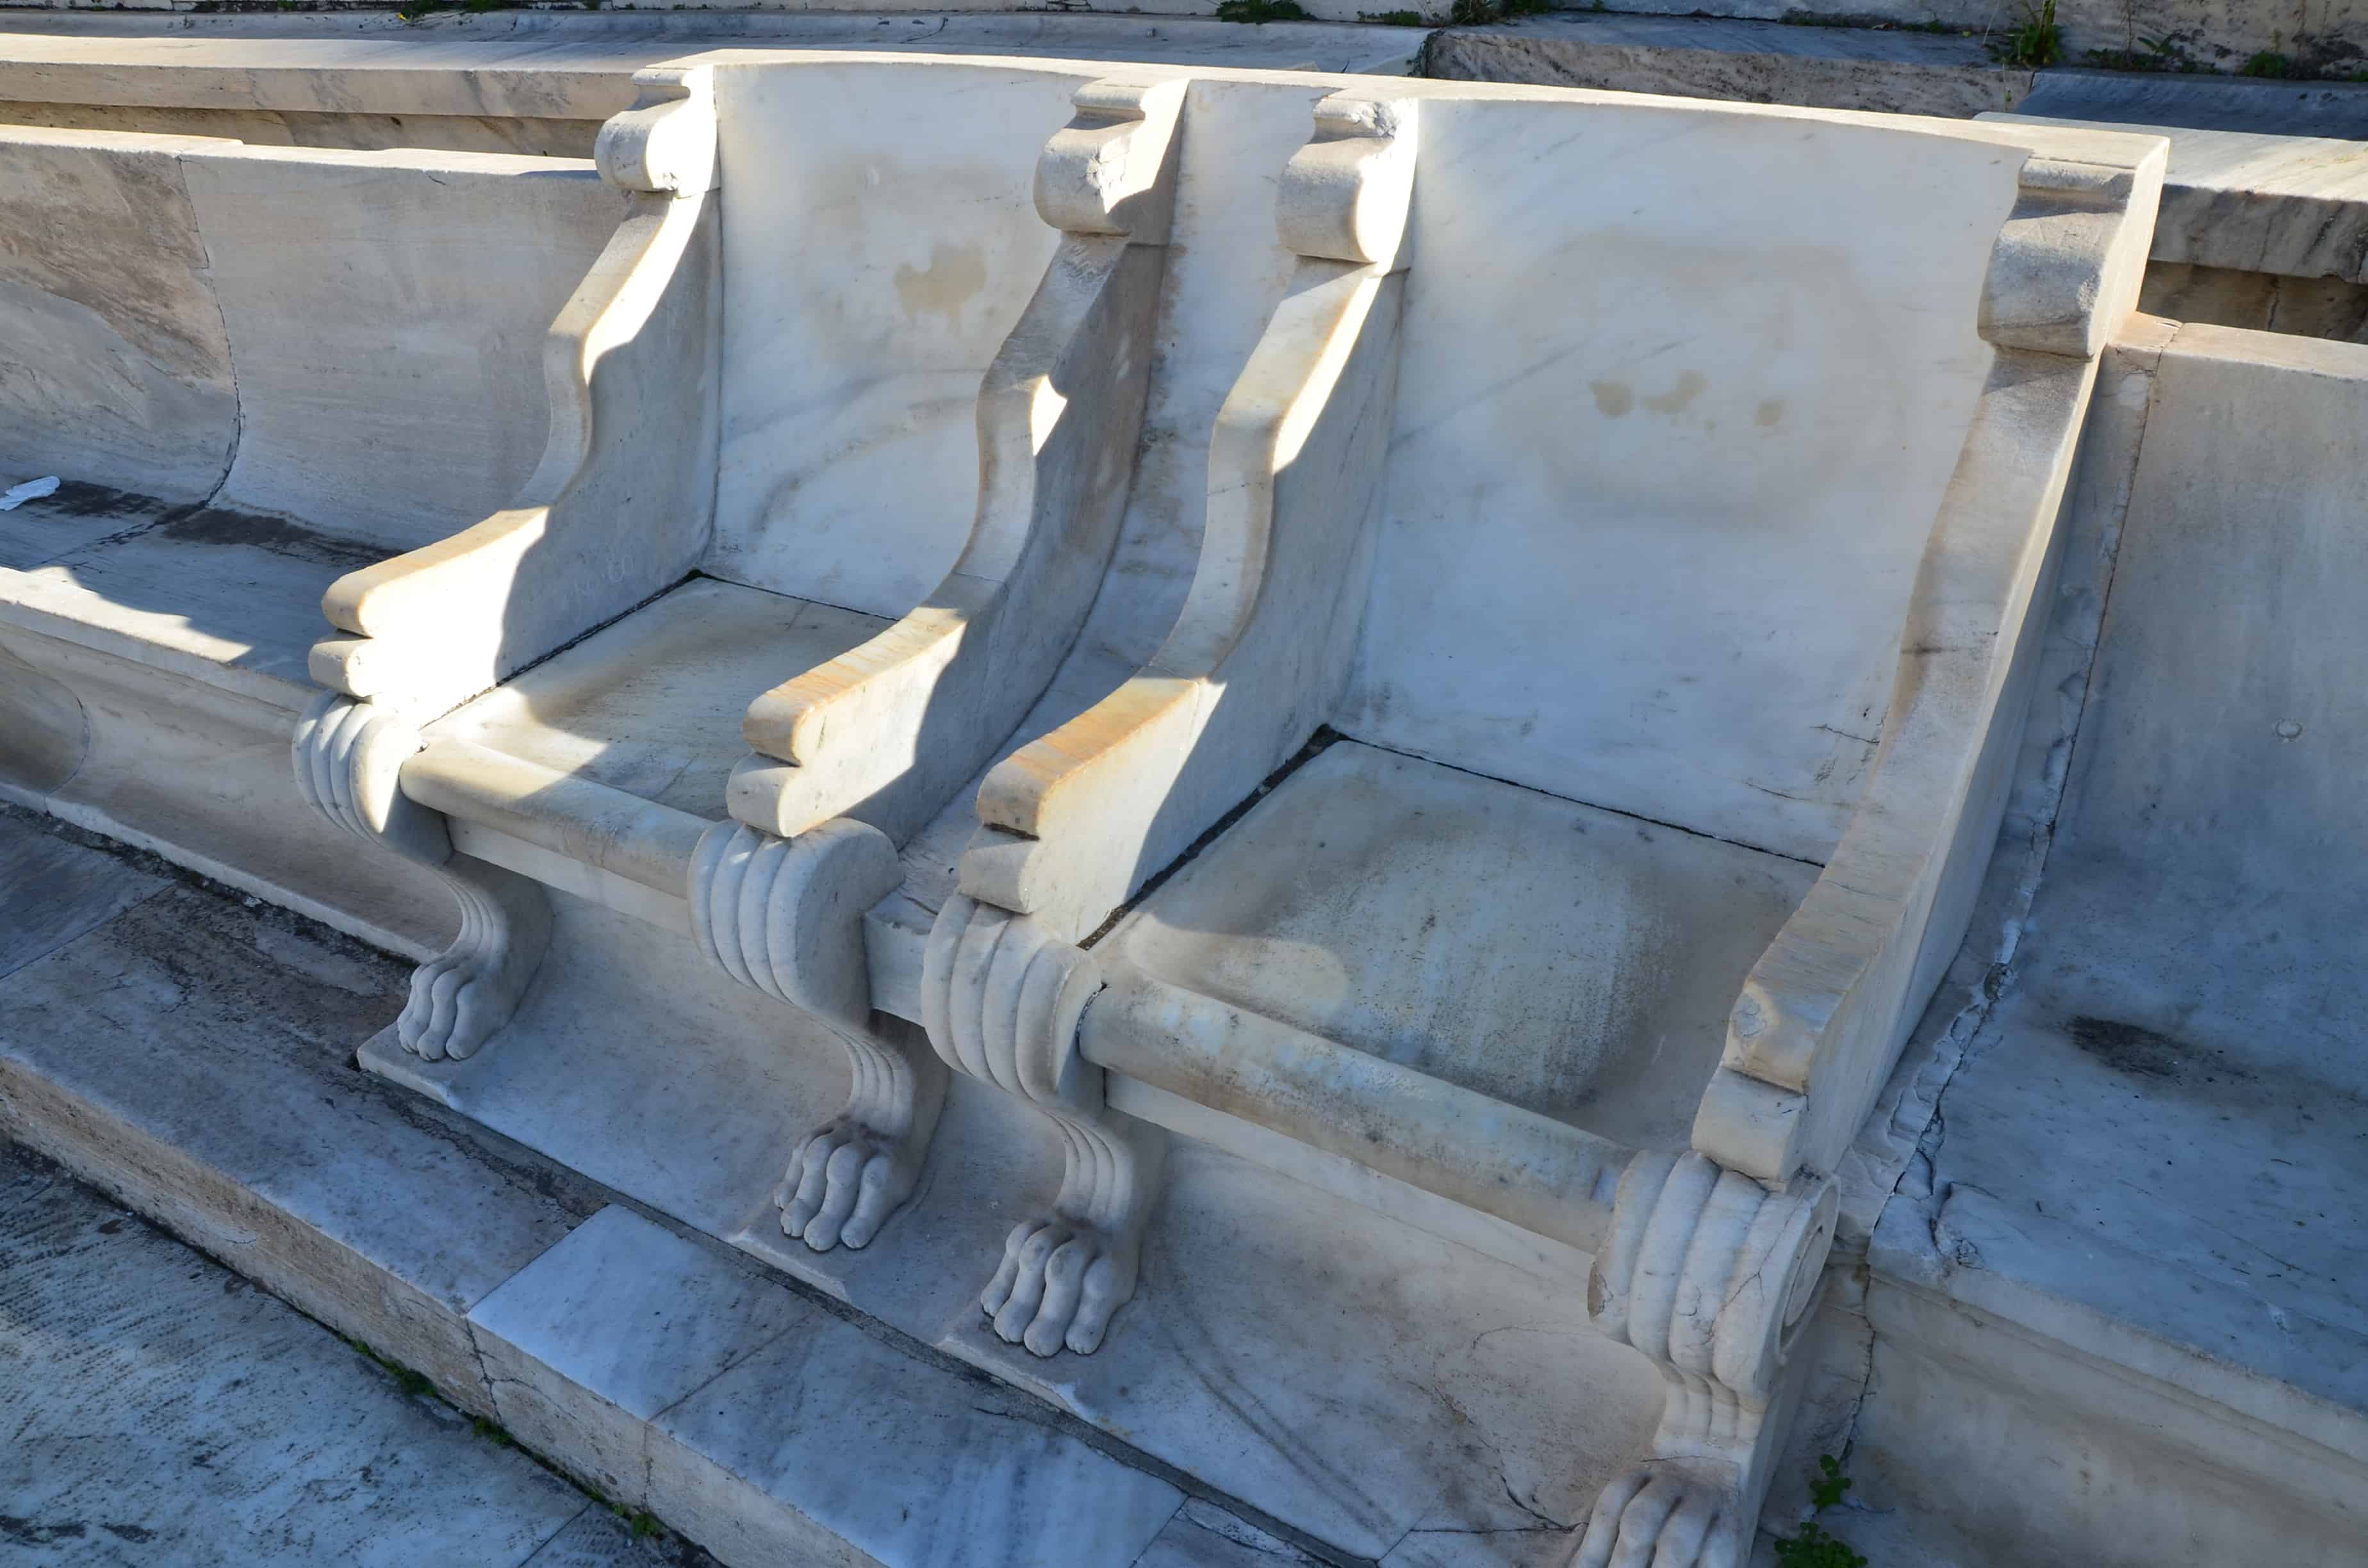 Royal boxes at Panathenaic Stadium in Athens, Greece